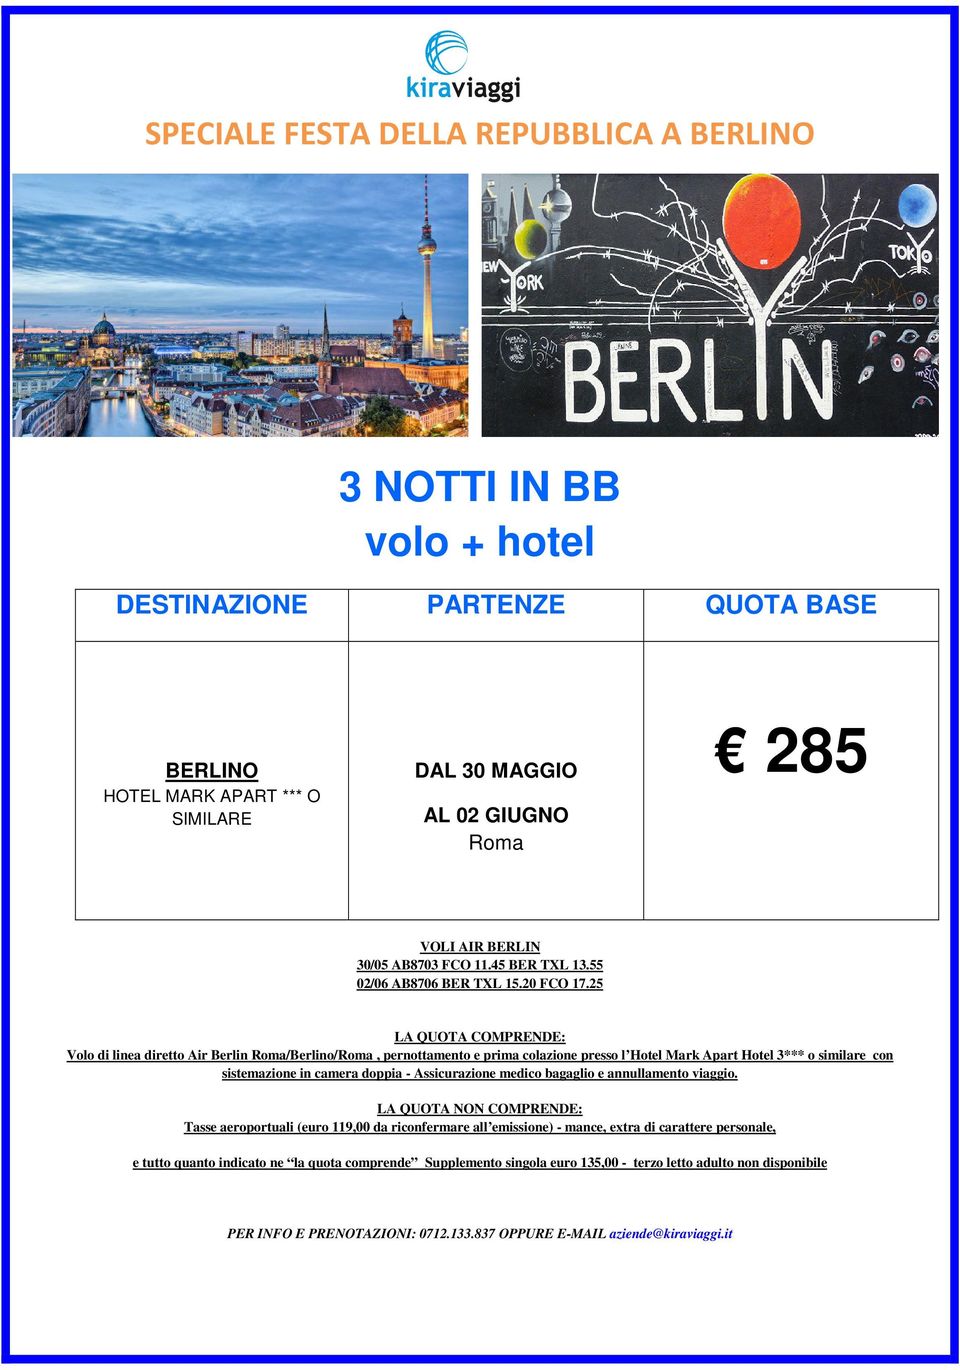 25 Volo di linea diretto Air Berlin /Berlino/, pernottamento e prima colazione presso l Hotel Mark Apart Hotel 3*** o similare con sistemazione in camera